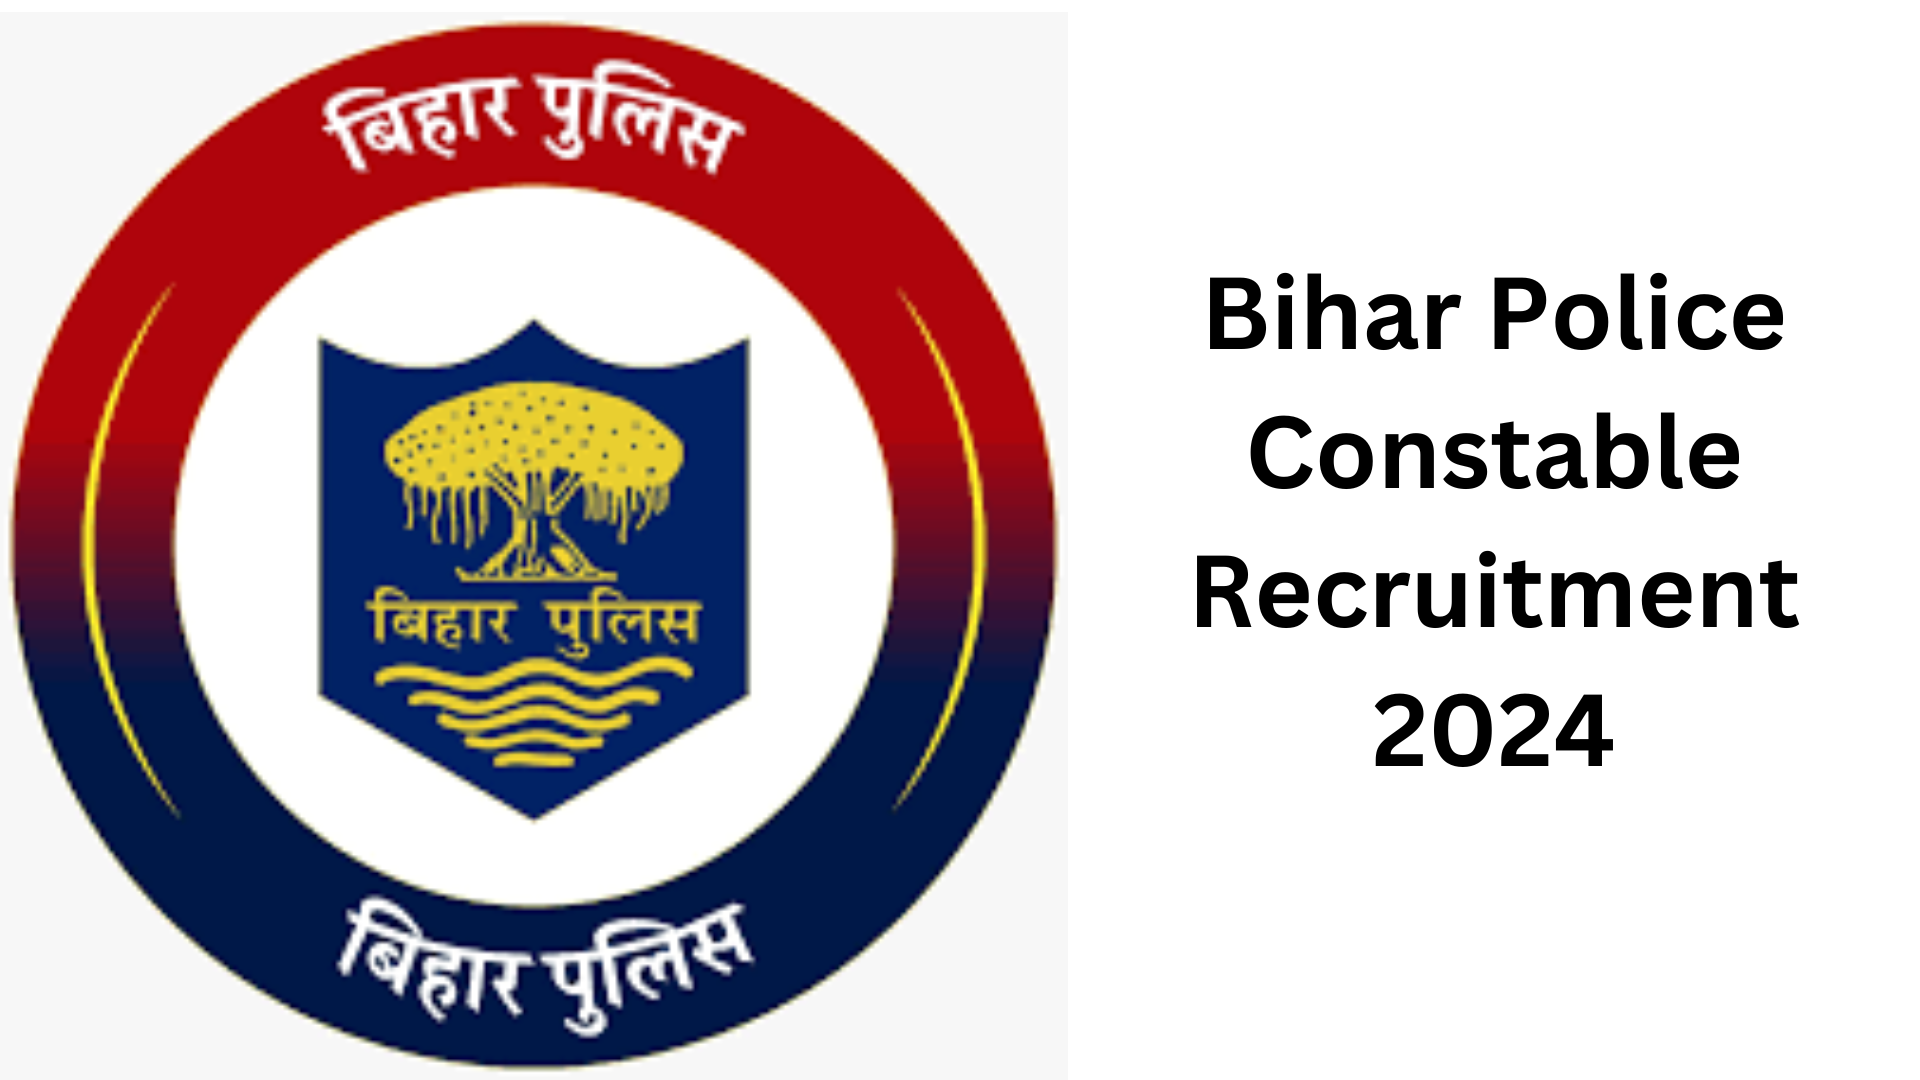 Bihar Police Constable Recruitment 2024 for 21391 Vacant Seats, Apply Now, Salary, Syllabus, Eligibility Criteria